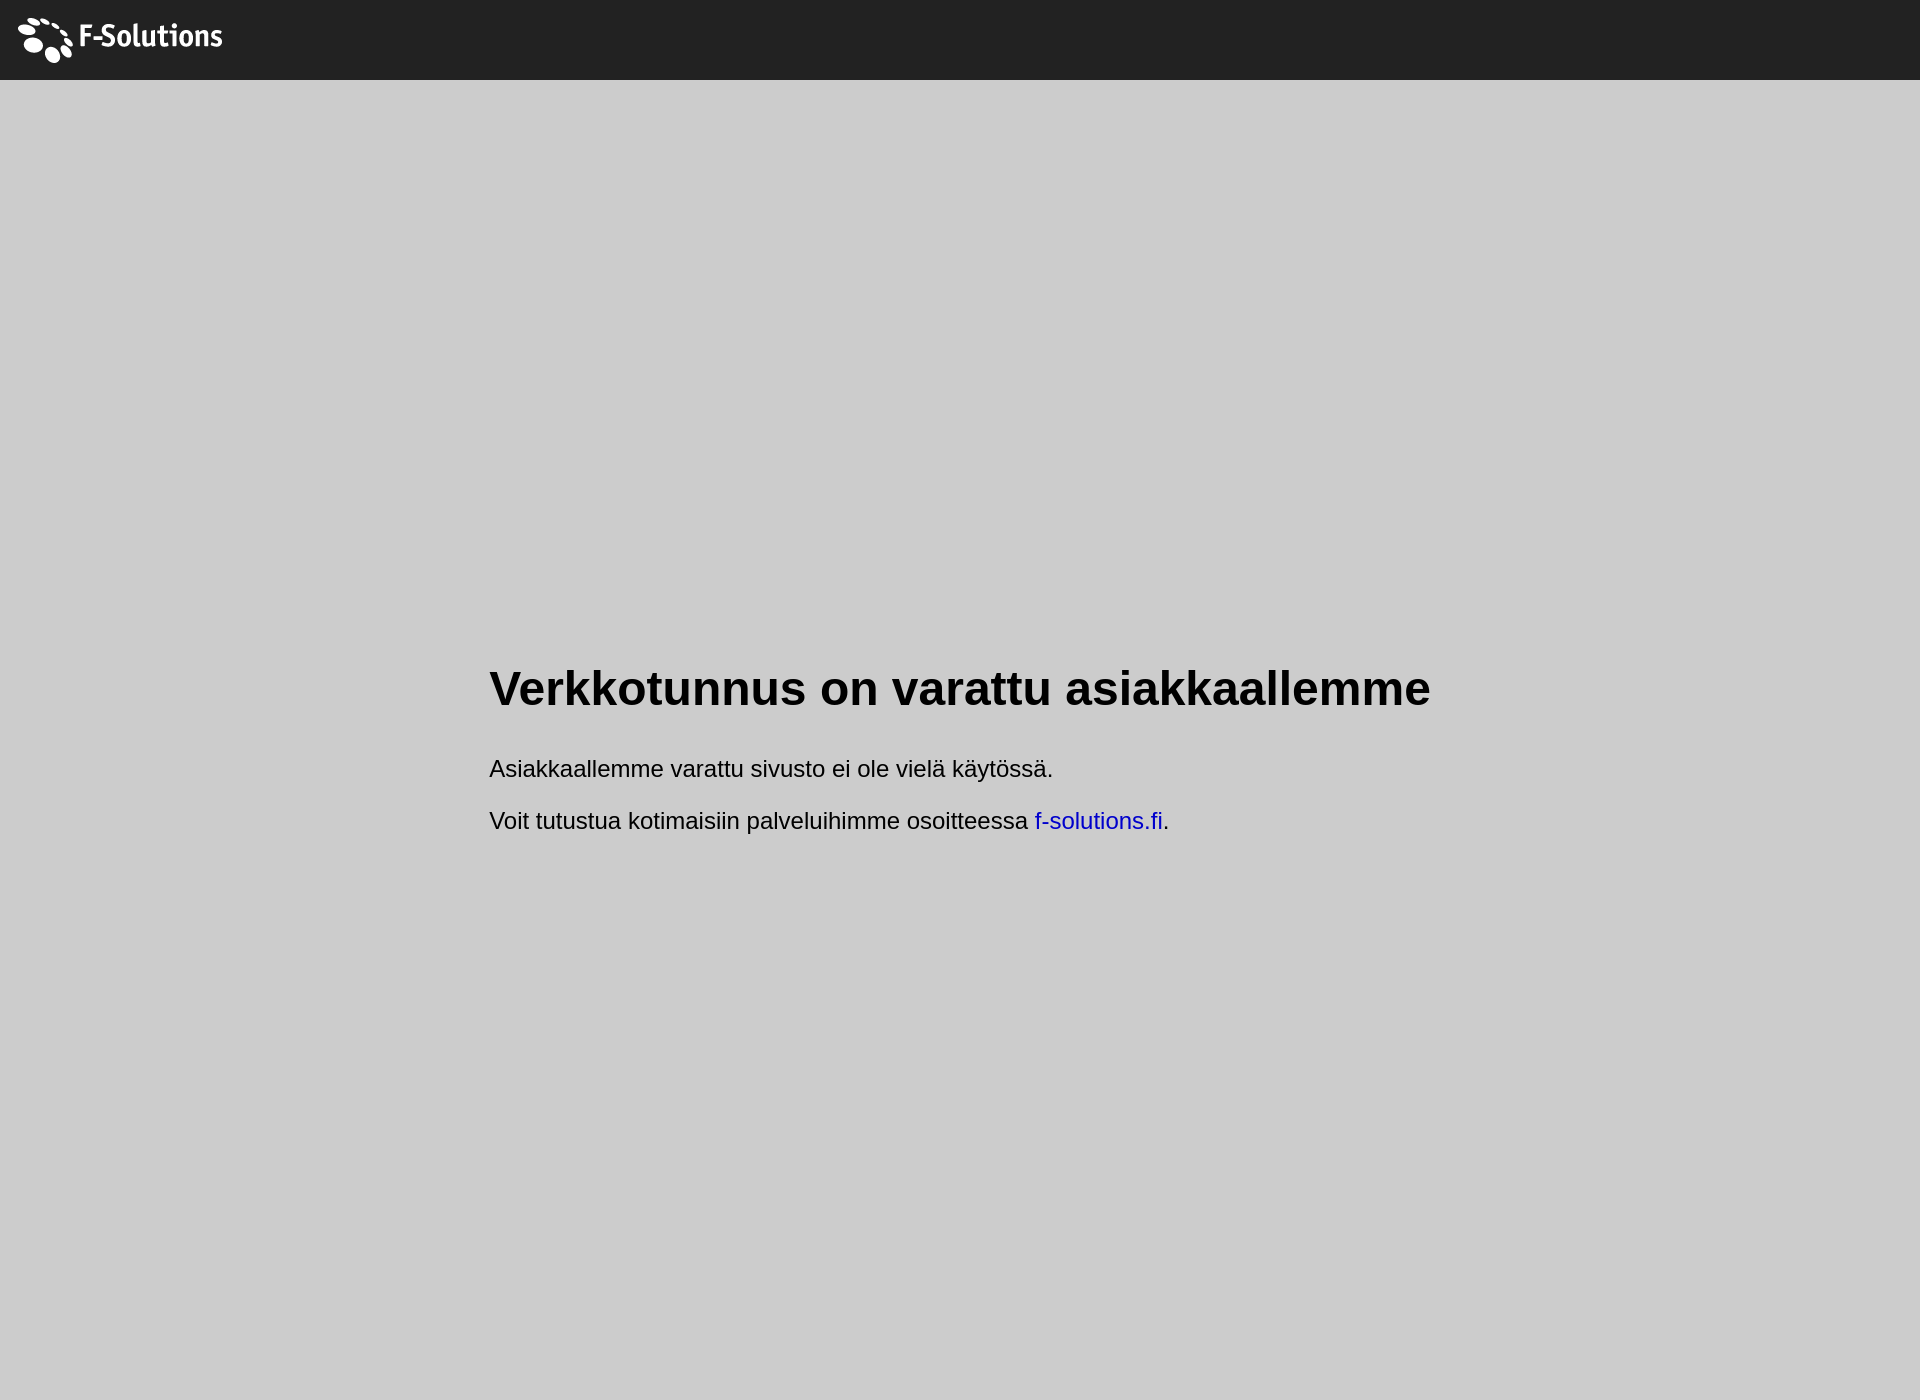 Screenshot for kaukovainionkiinteistohuolto.fi